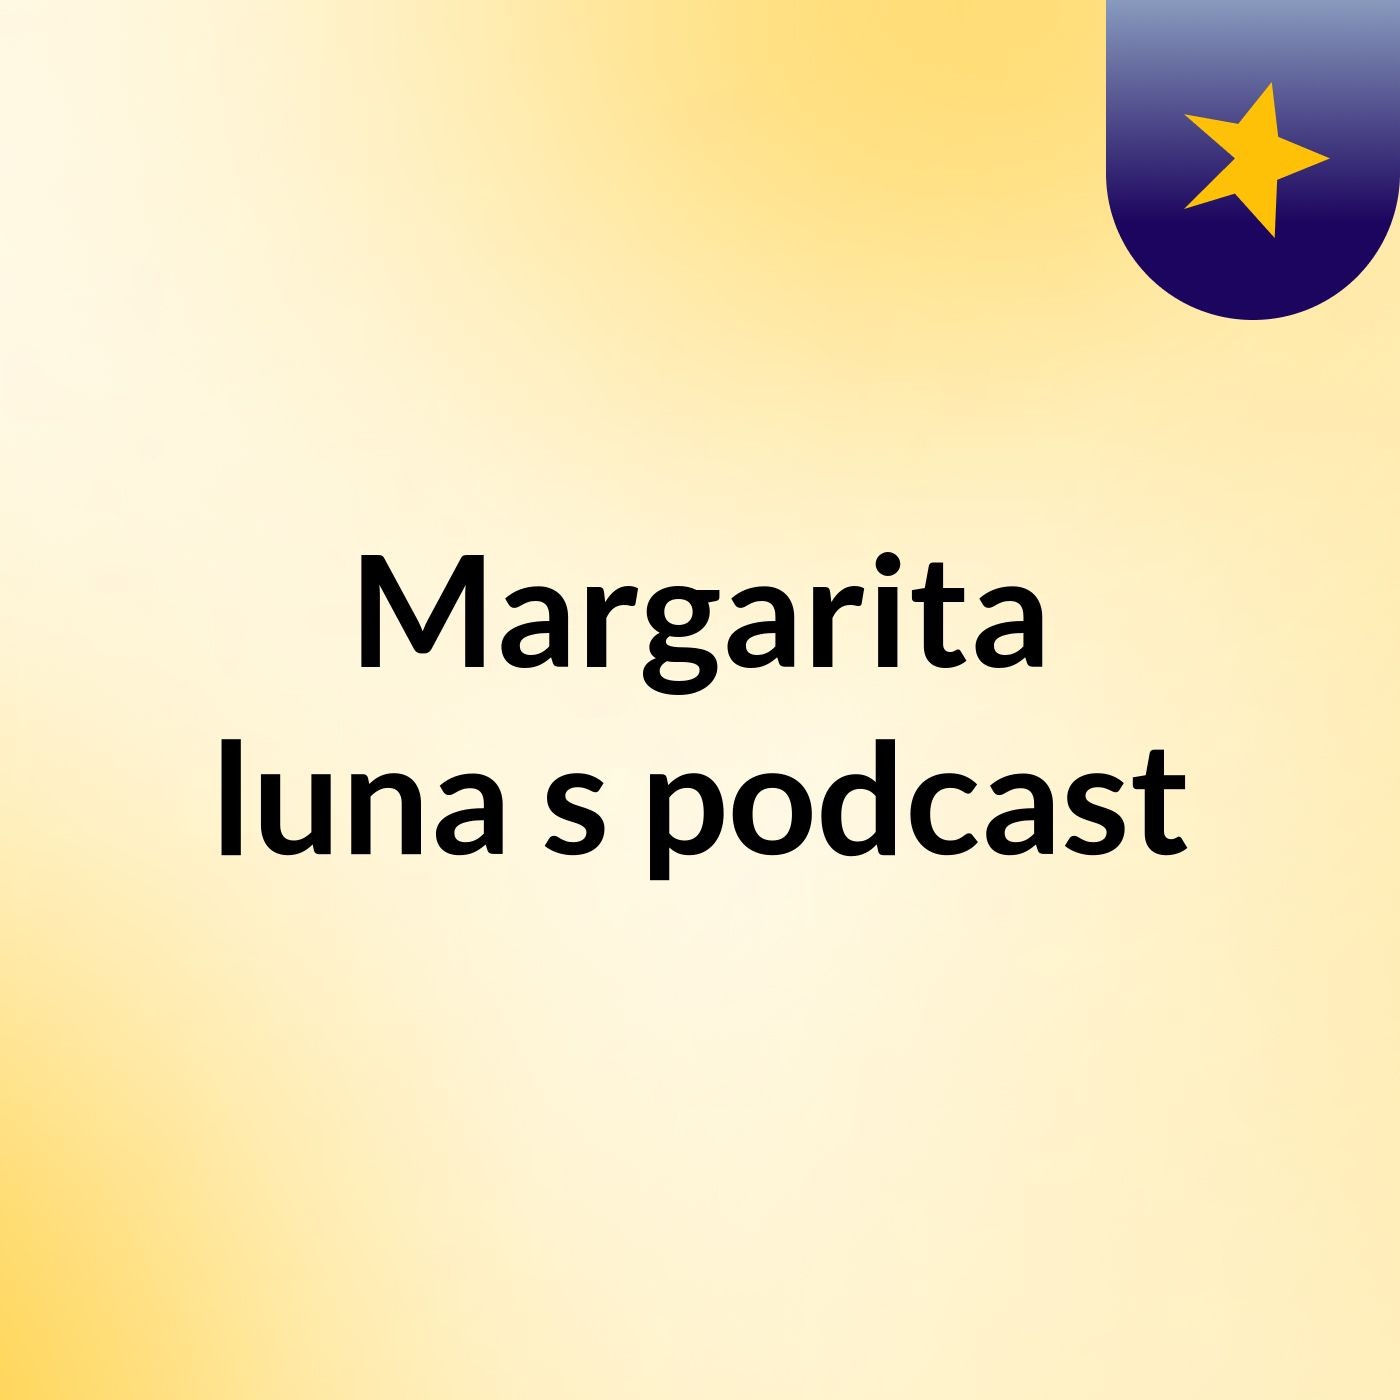 Margarita luna's podcast